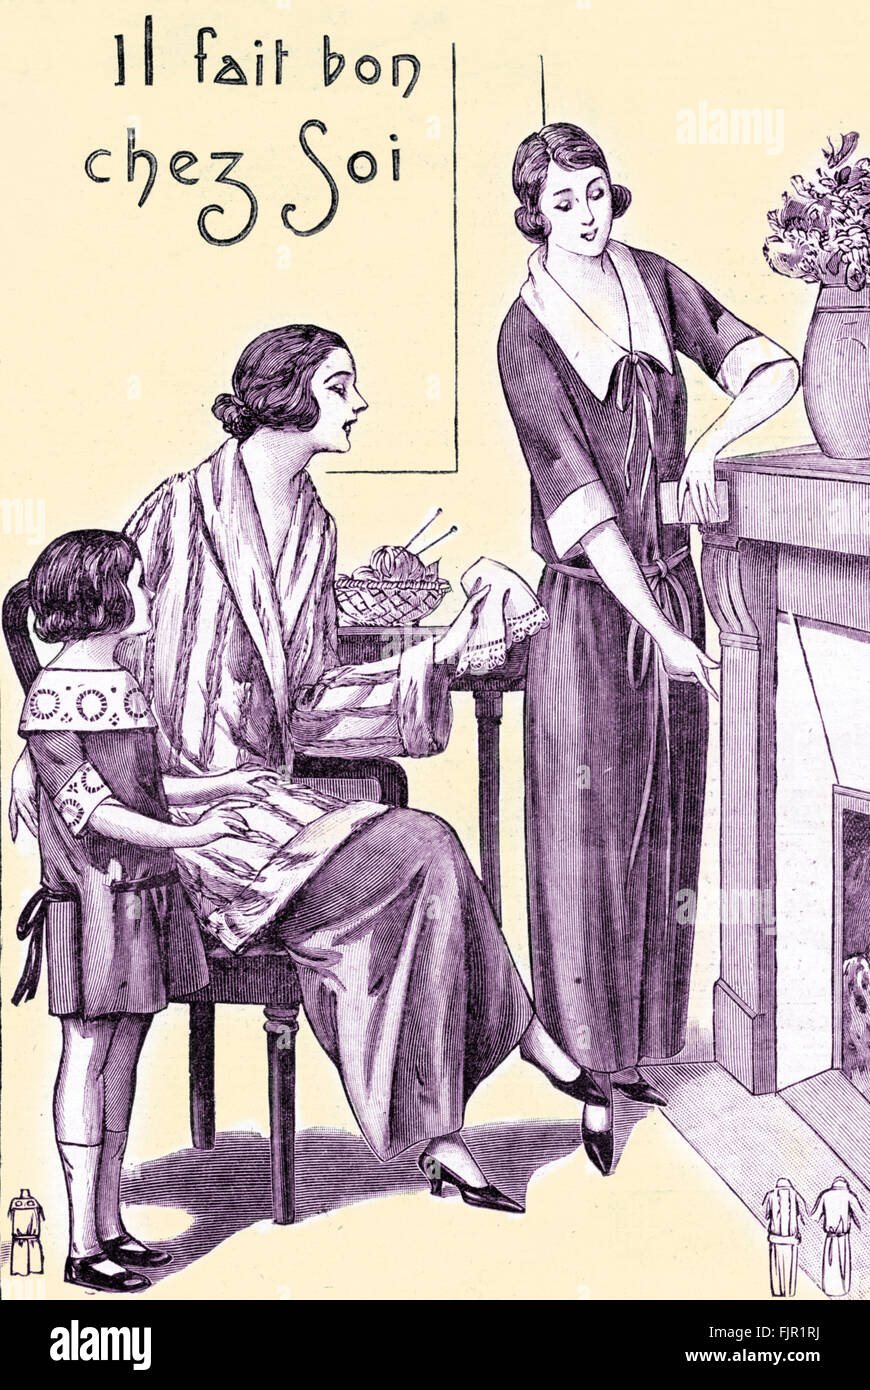 Französische Mode der 1920er Jahre: Home Komfort ("Il Fait Bon chez Soi"). Loungewear.  Veröffentlicht in Le Petit Echo De La Mode, 1923. Französische Mode-Magazin. Stockfoto